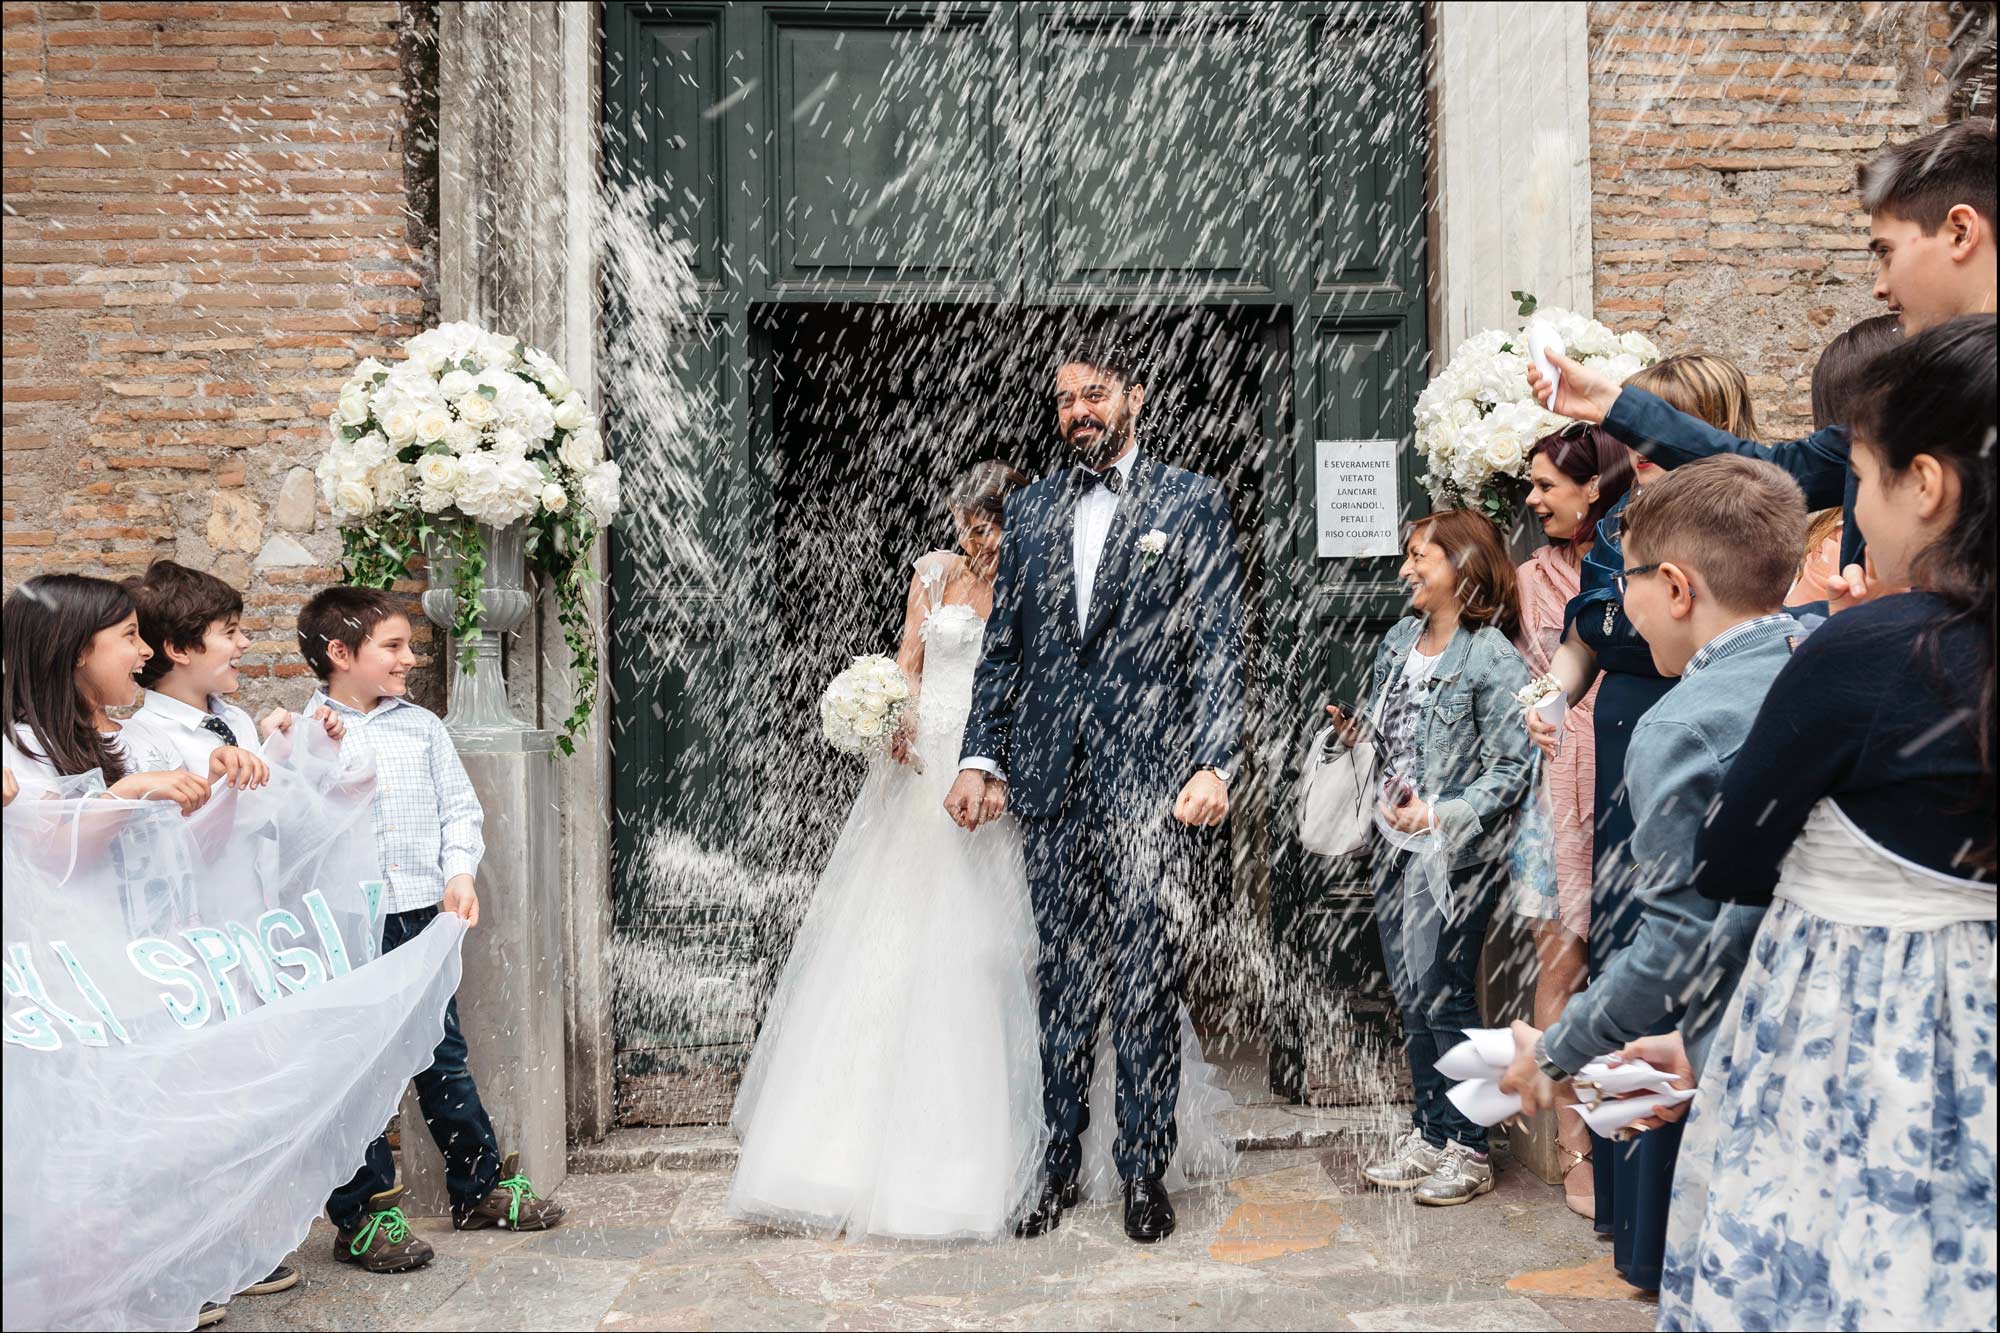 Lancio del riso nel Mausoleo di Santa Costanza a Roma durante un Matrimonio